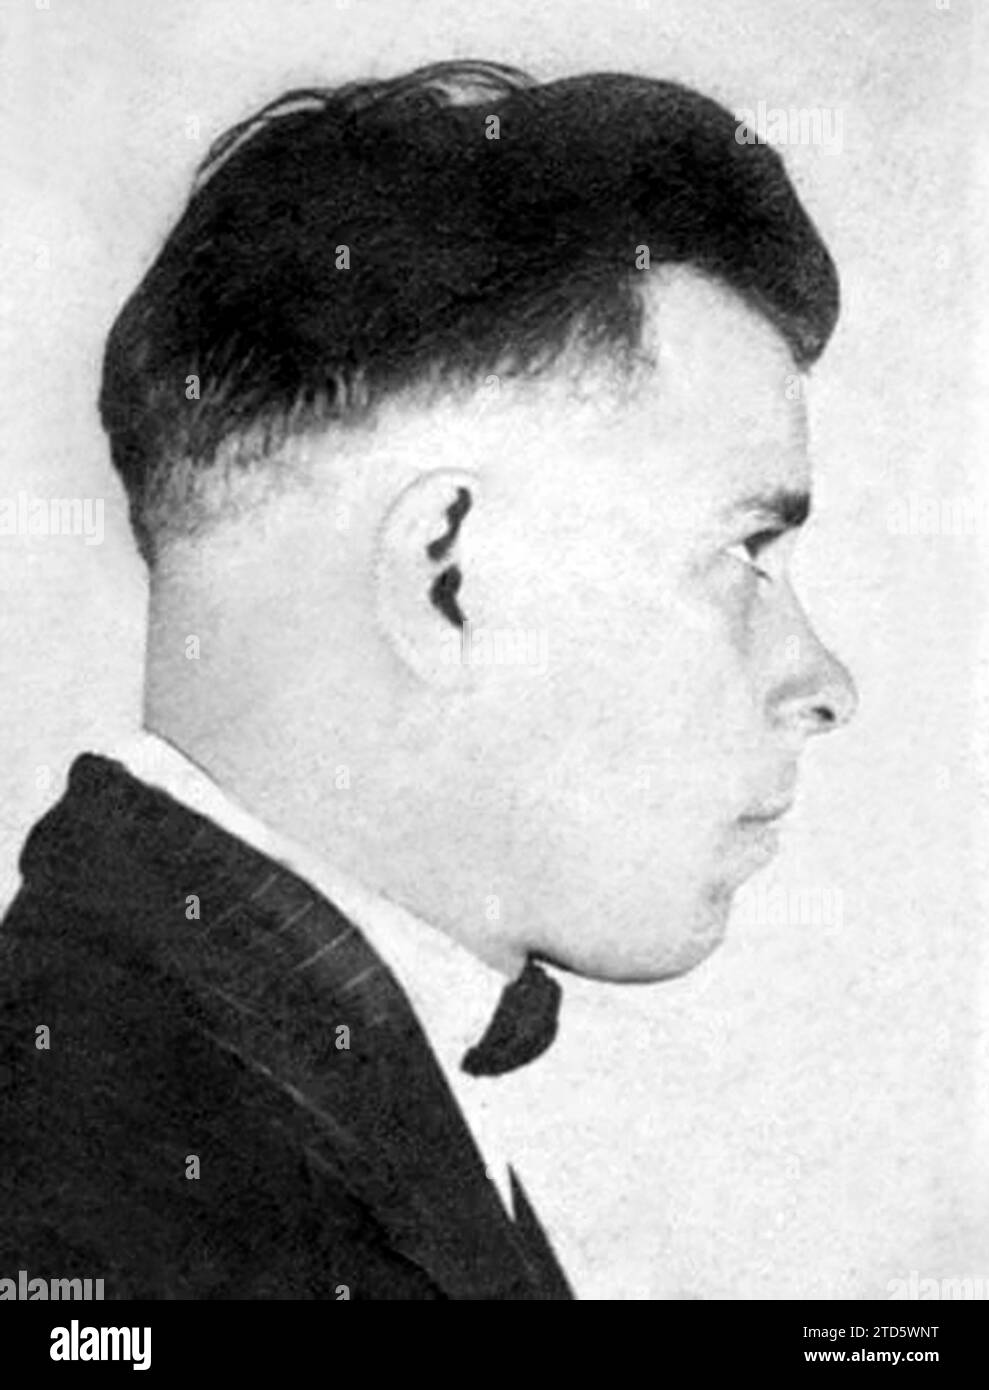 1926 ca , USA : The american gangster JOHN Herbert DILLINGER ( 1902 - 1934 ) mugshot , killed by FBI during a fire fighting .  - HISTORY - FOTO STORICHE - MUG SHOT - MUG-SHOT - FOTO SEGNALETICA - CRIMINE - CRIMINALE - CRIME - ASSASSINO - CRIMINAL - KILLER - Gangstern - portrait - cravatta - tie bow - papillon  - rapinatore di banche - RICERCATO - BANDITO - GANGSTERN - proibizionismo - PROFILO - PROFILE ---  Archivio GBB Stock Photo